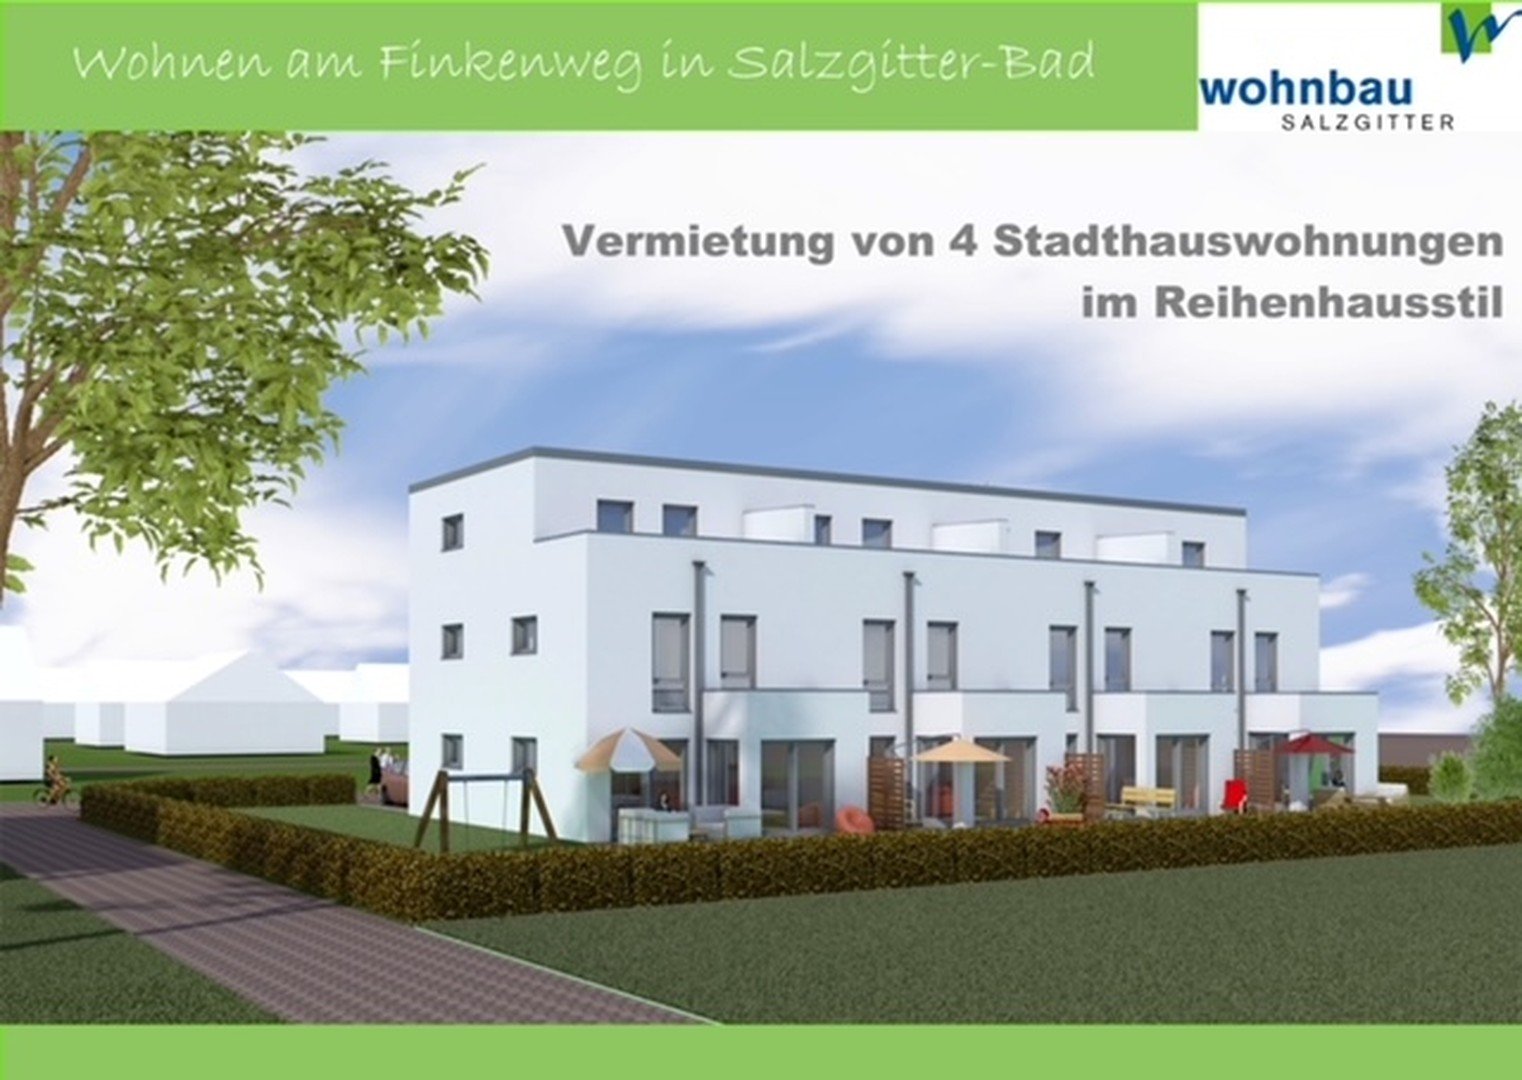 Vermietung von 1 exclusiven Neubau-Stadthaus in SZ-Bad